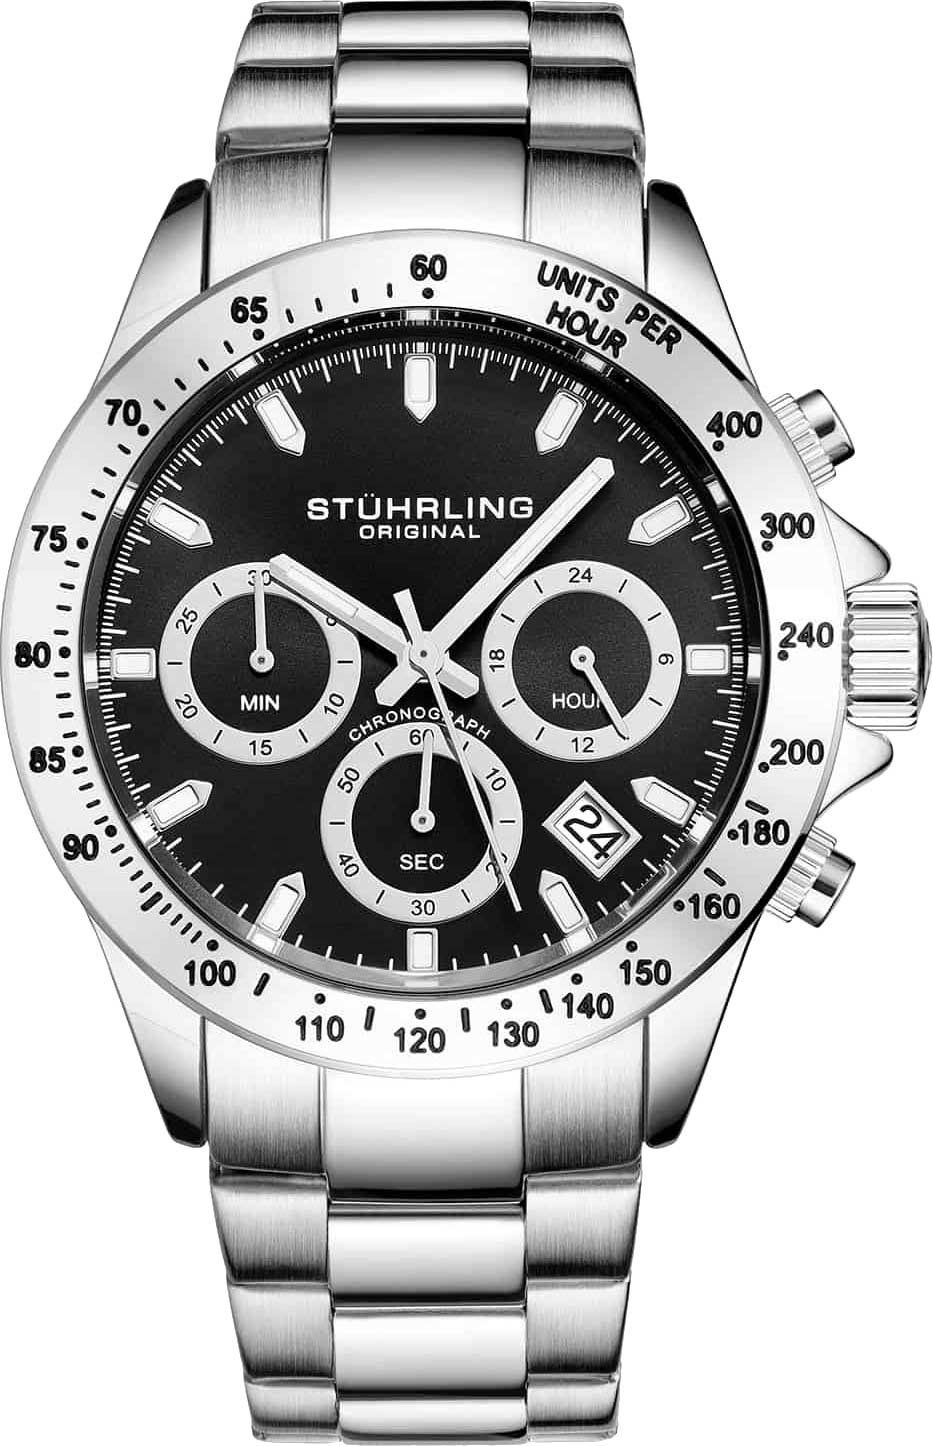 Наручные часы Stuhrling 3960.1 — купить в интернет-магазине AllTime.ru по лучшей цене, отзывы, фото, характеристики, инструкция, описание